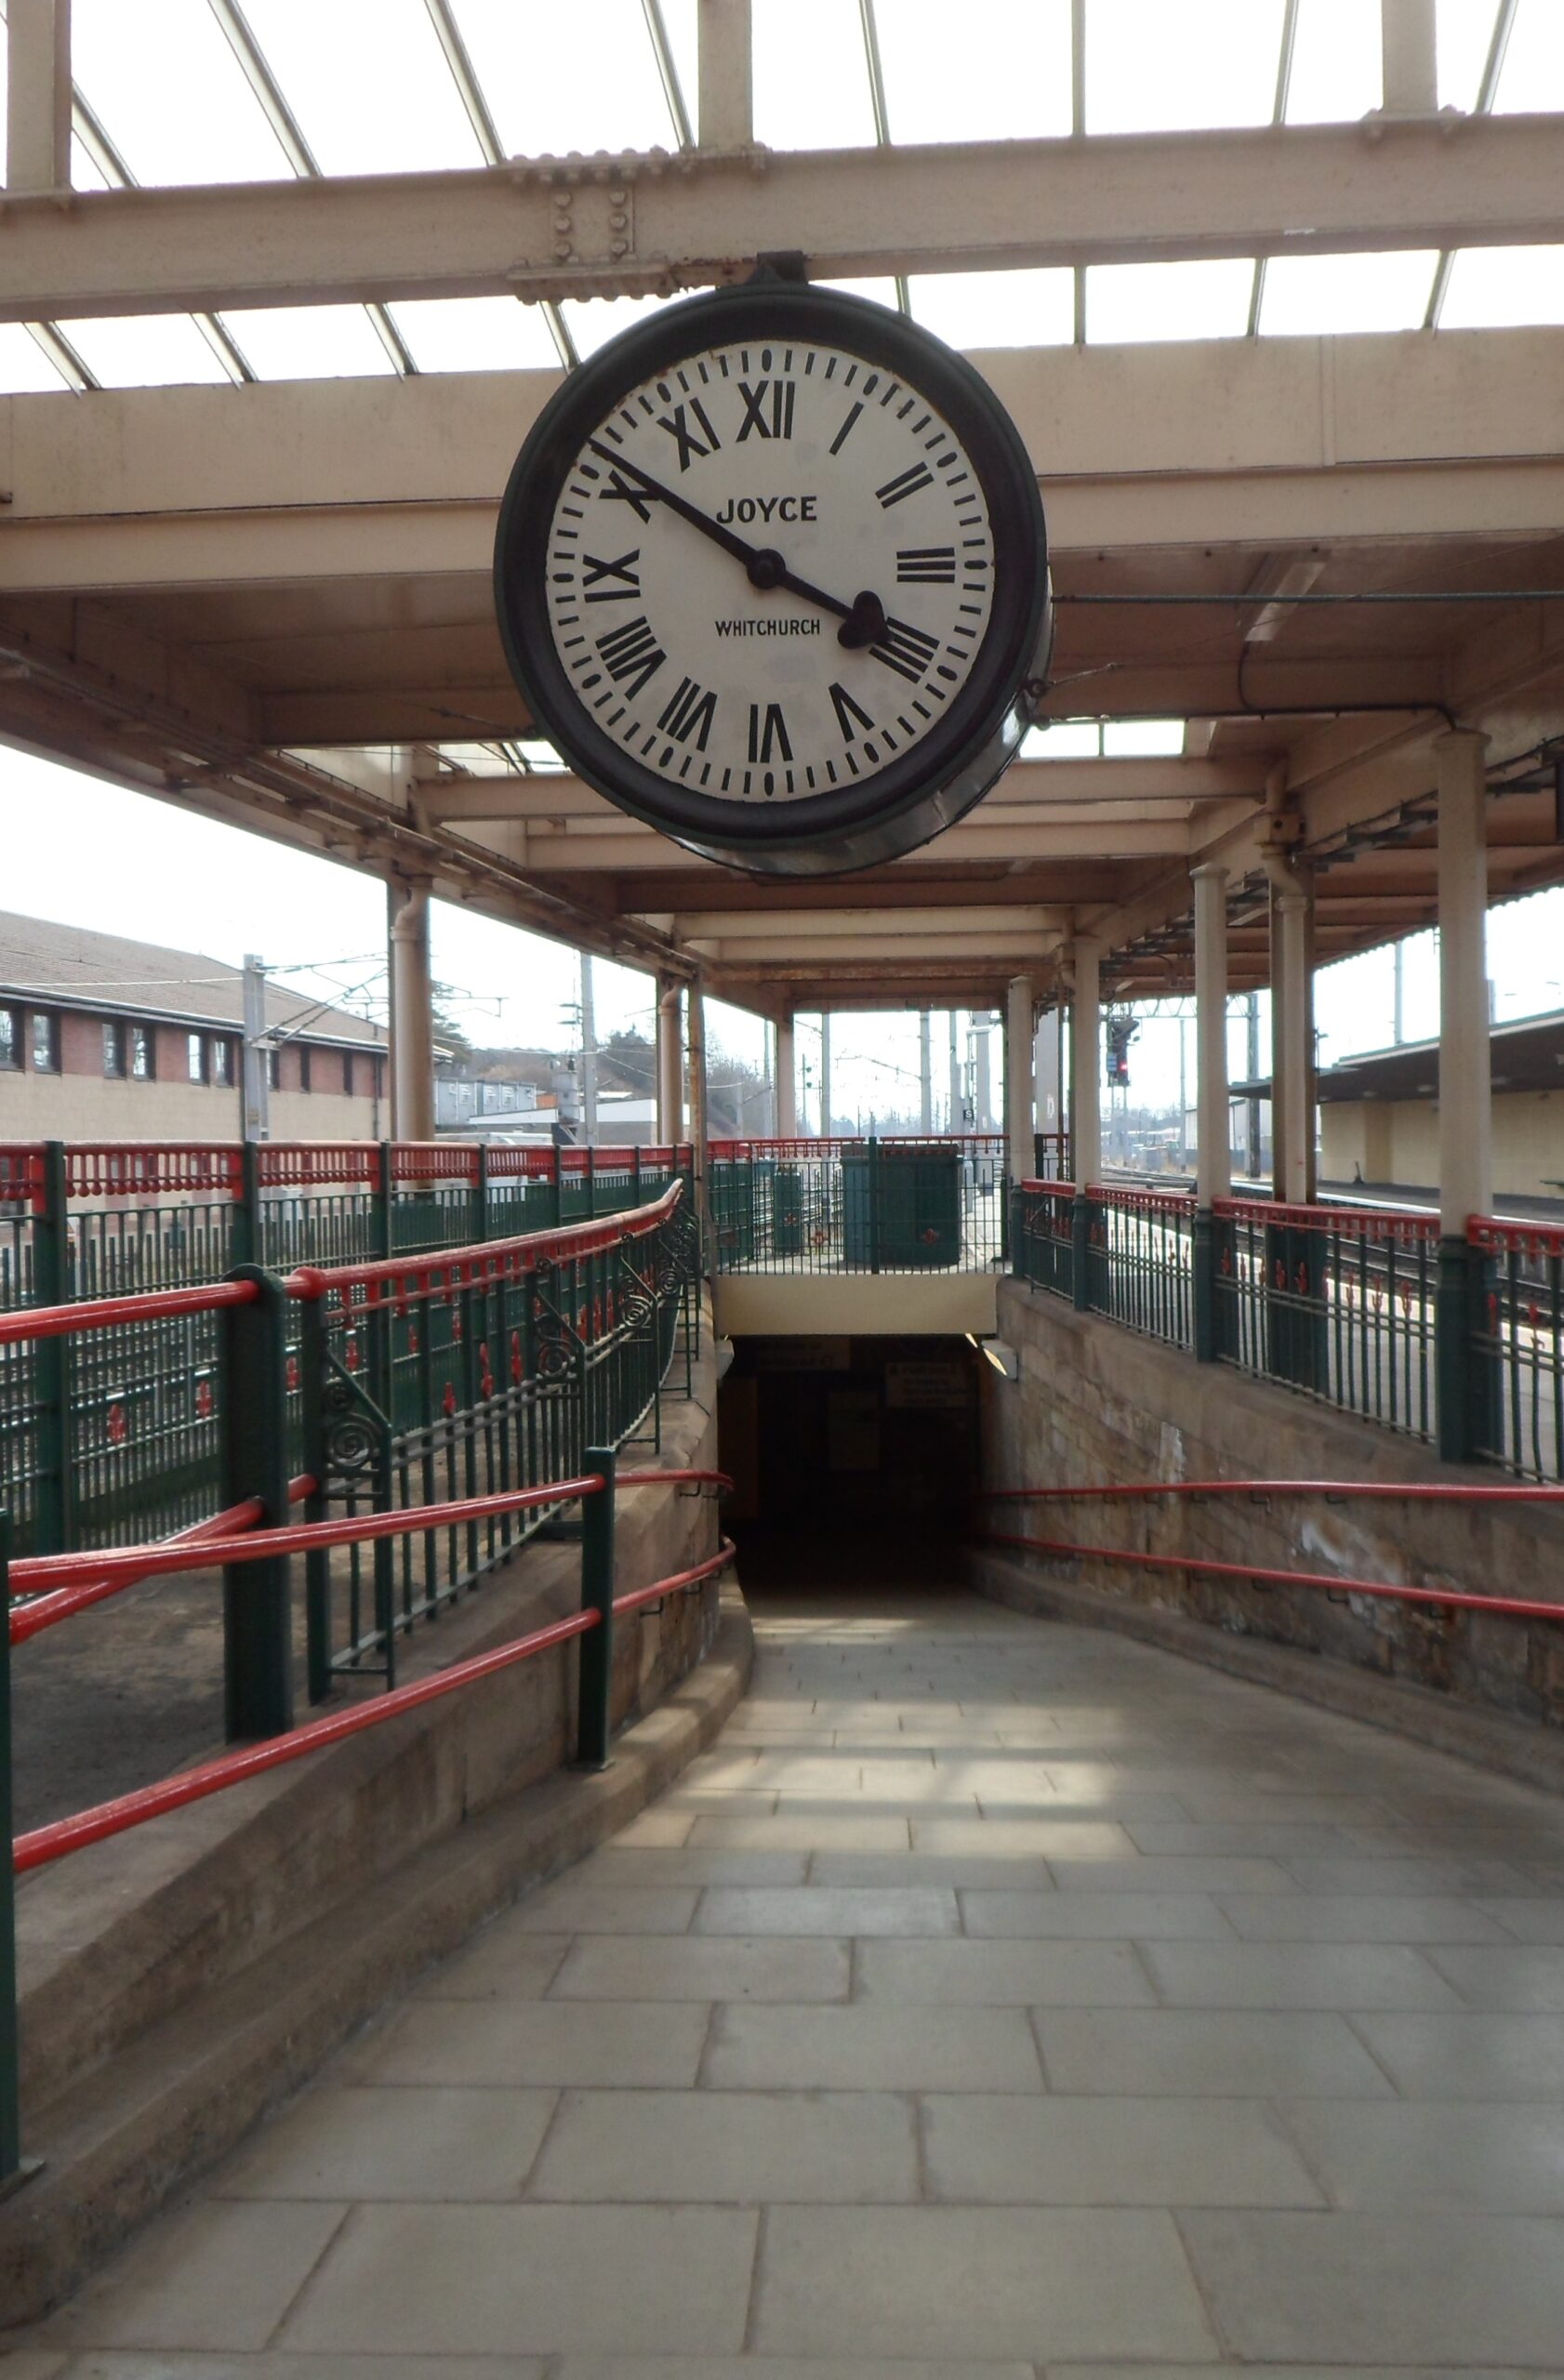 carnforth railway clock